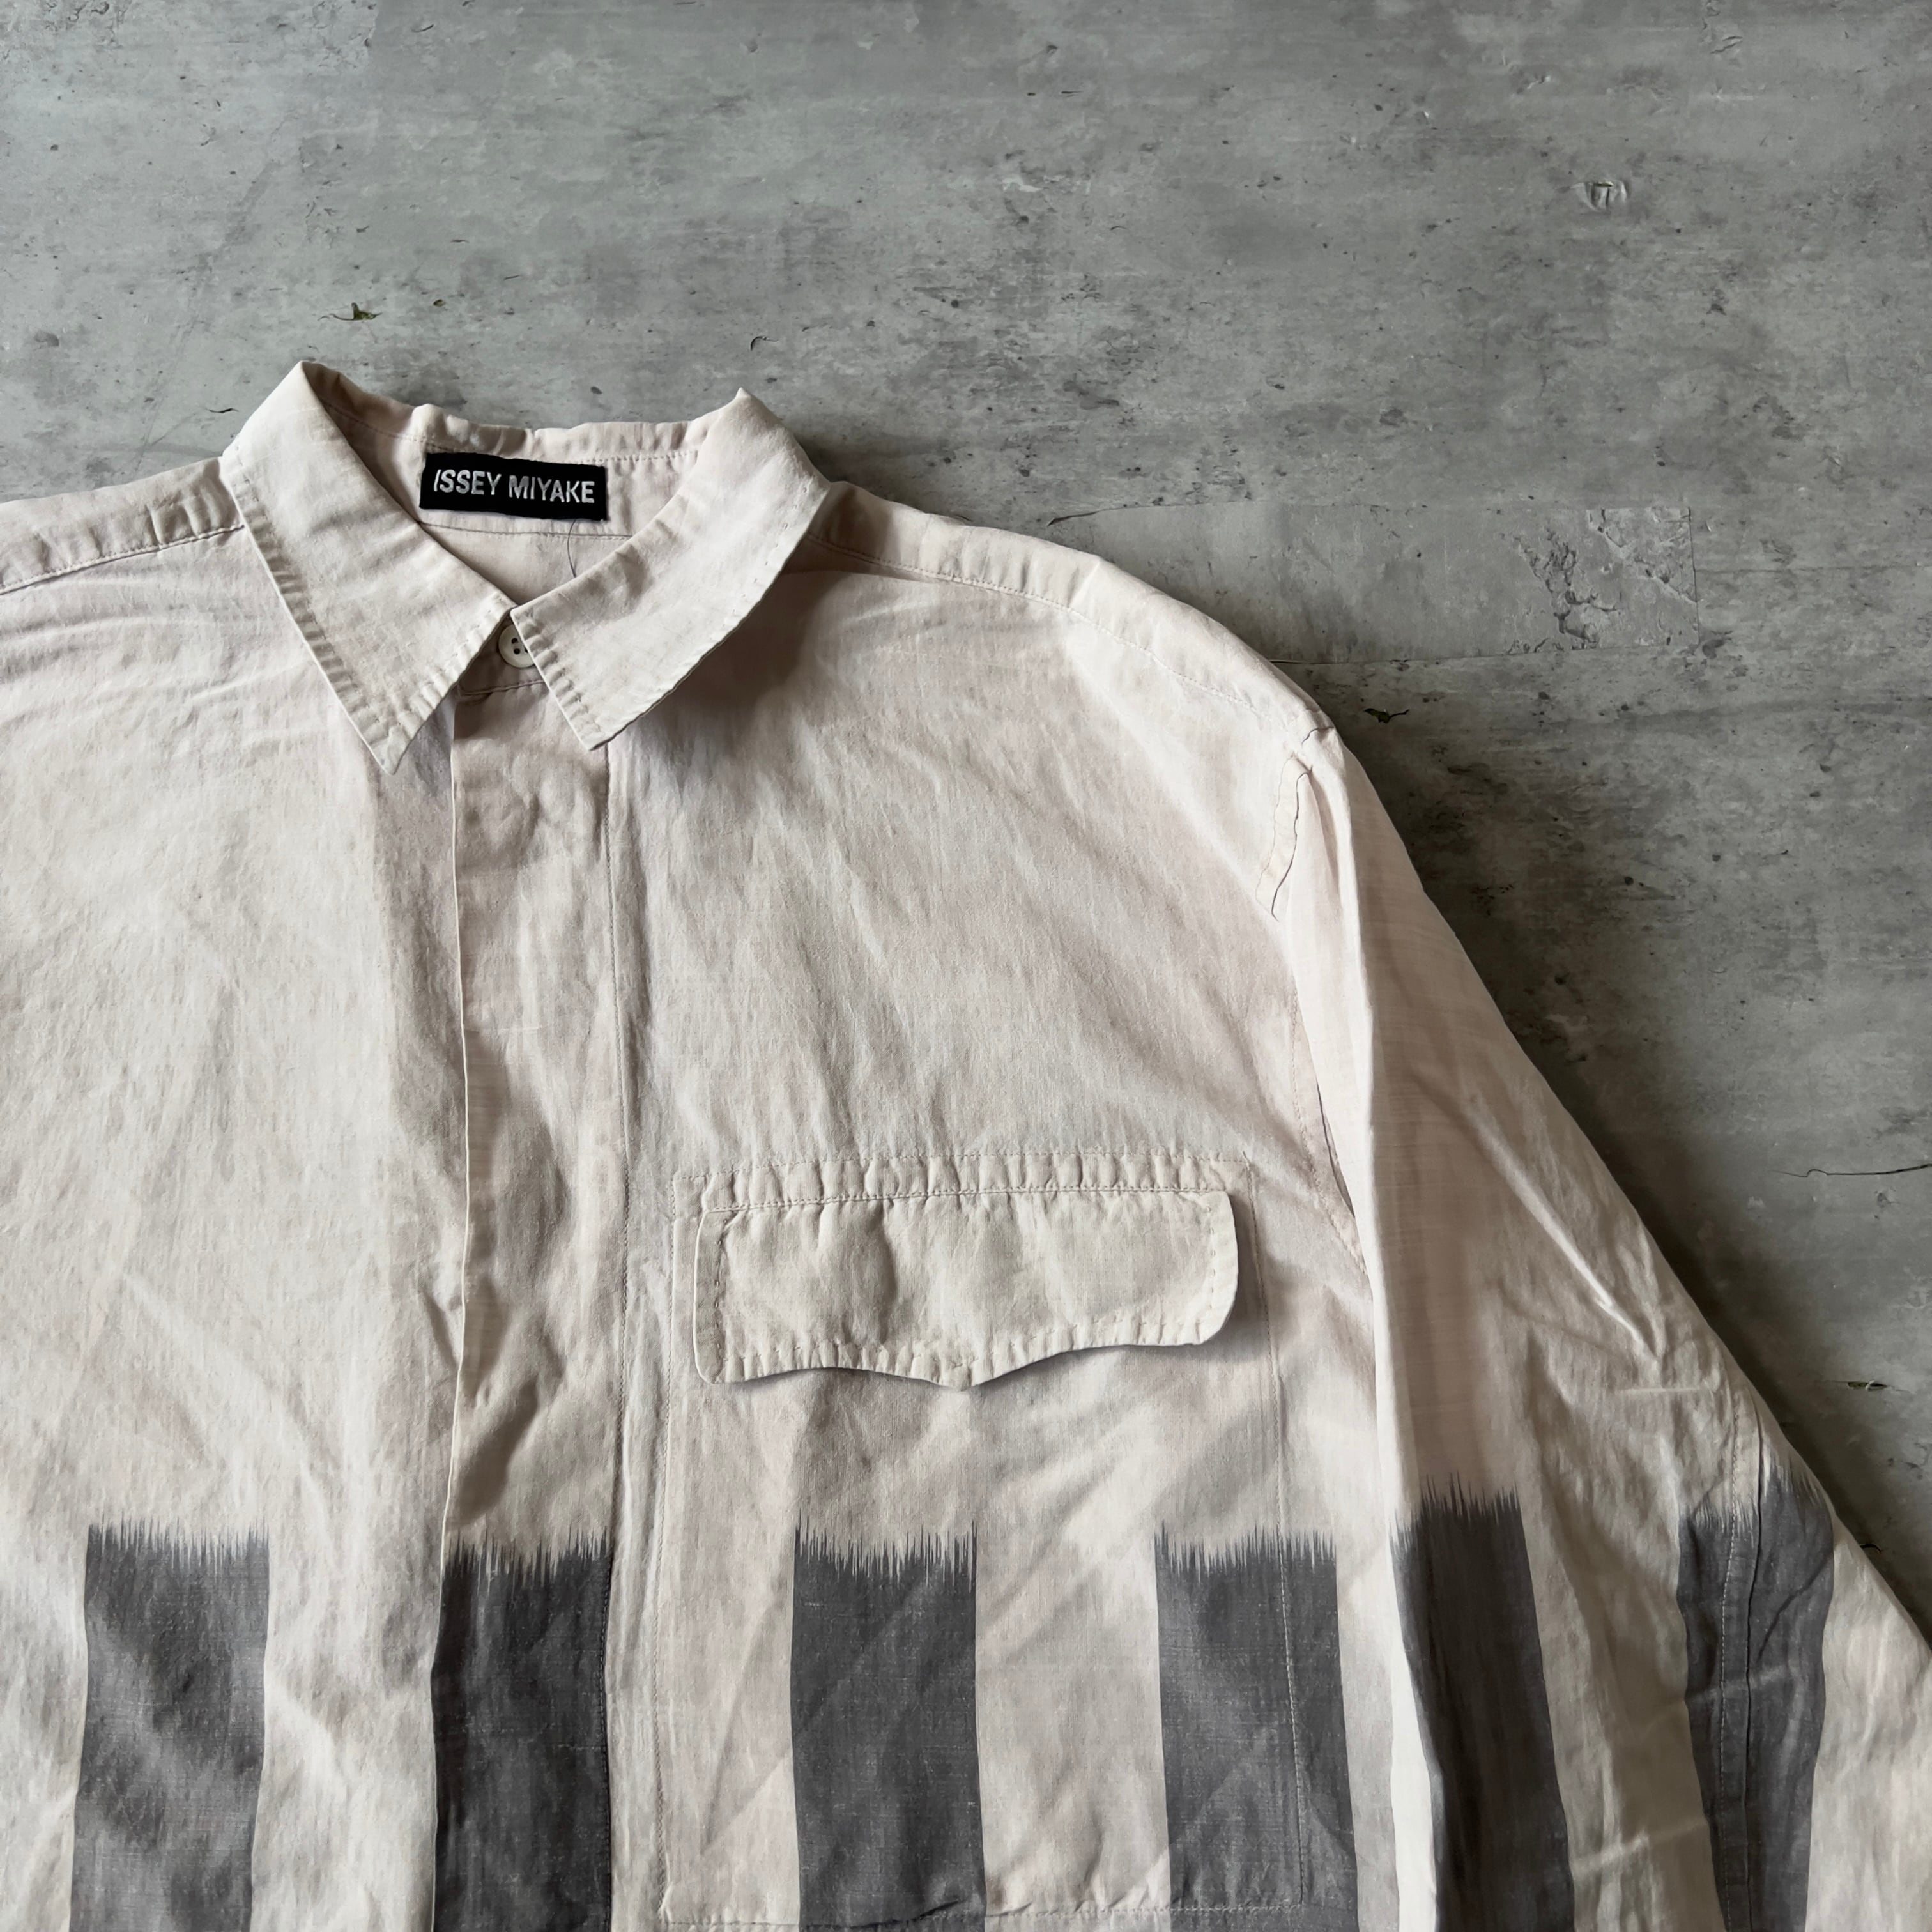 90s “ISSEY MIYAKE” 黒タグ cotton × linen box silhouette shirt 